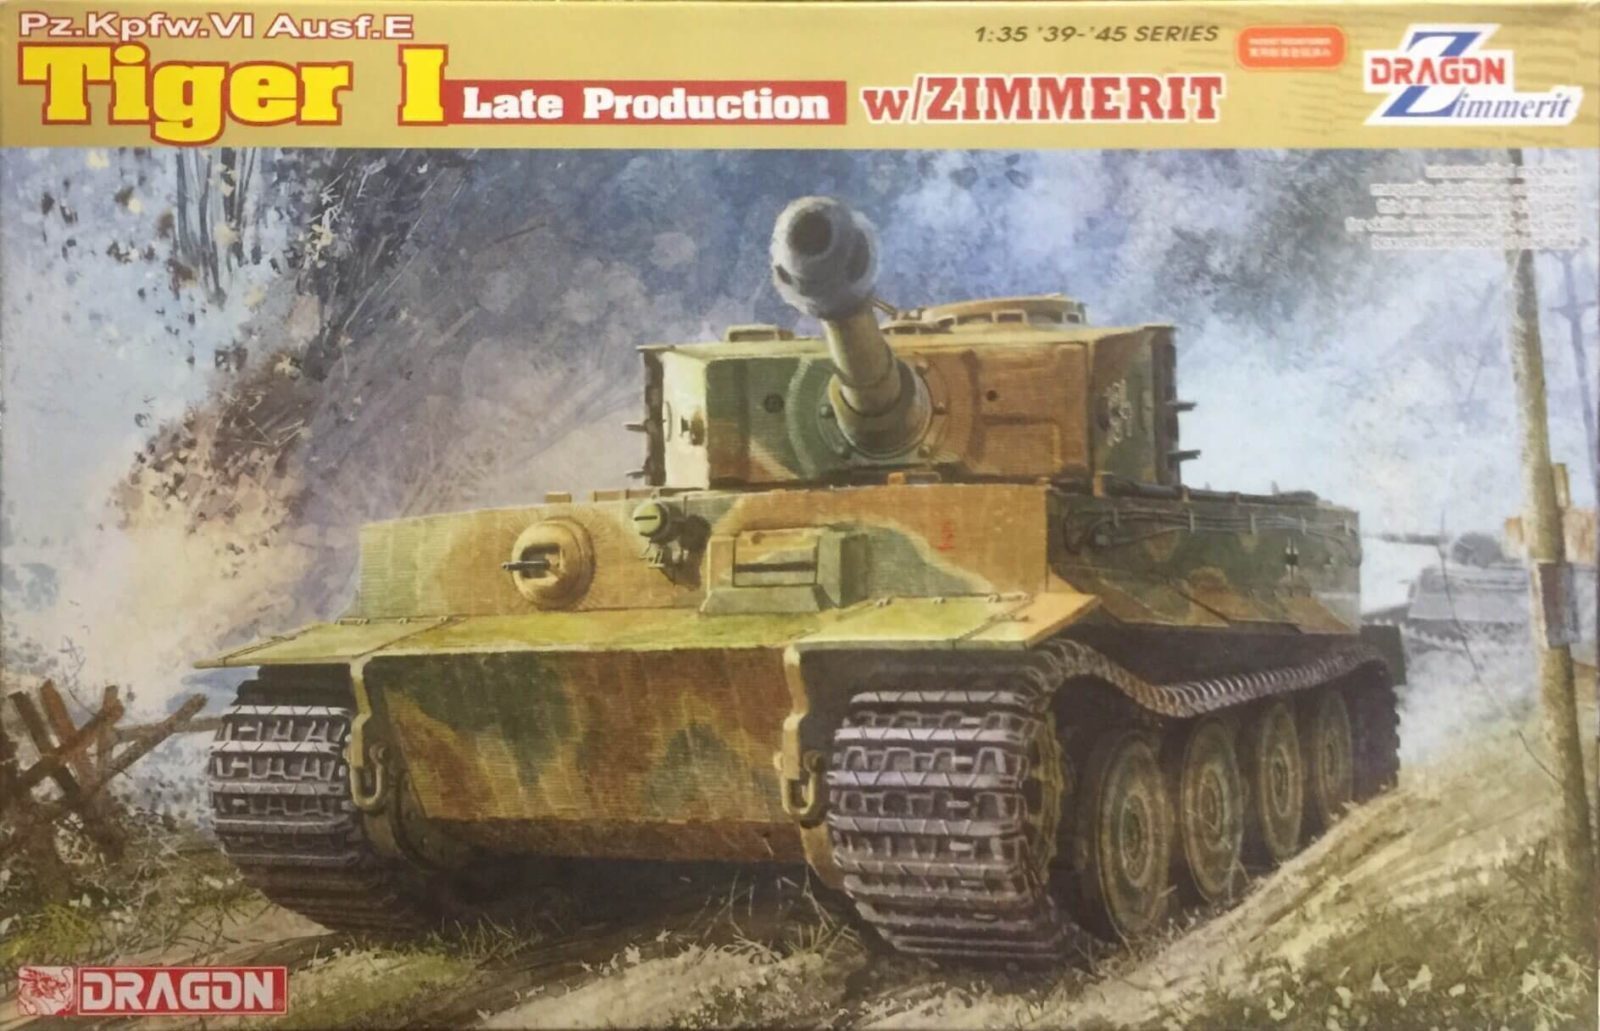 Dragon Pz.Kpfw.VI Ausf.E Tiger I Late Production w/Zimmerit Ref 6383 Escala 1:35